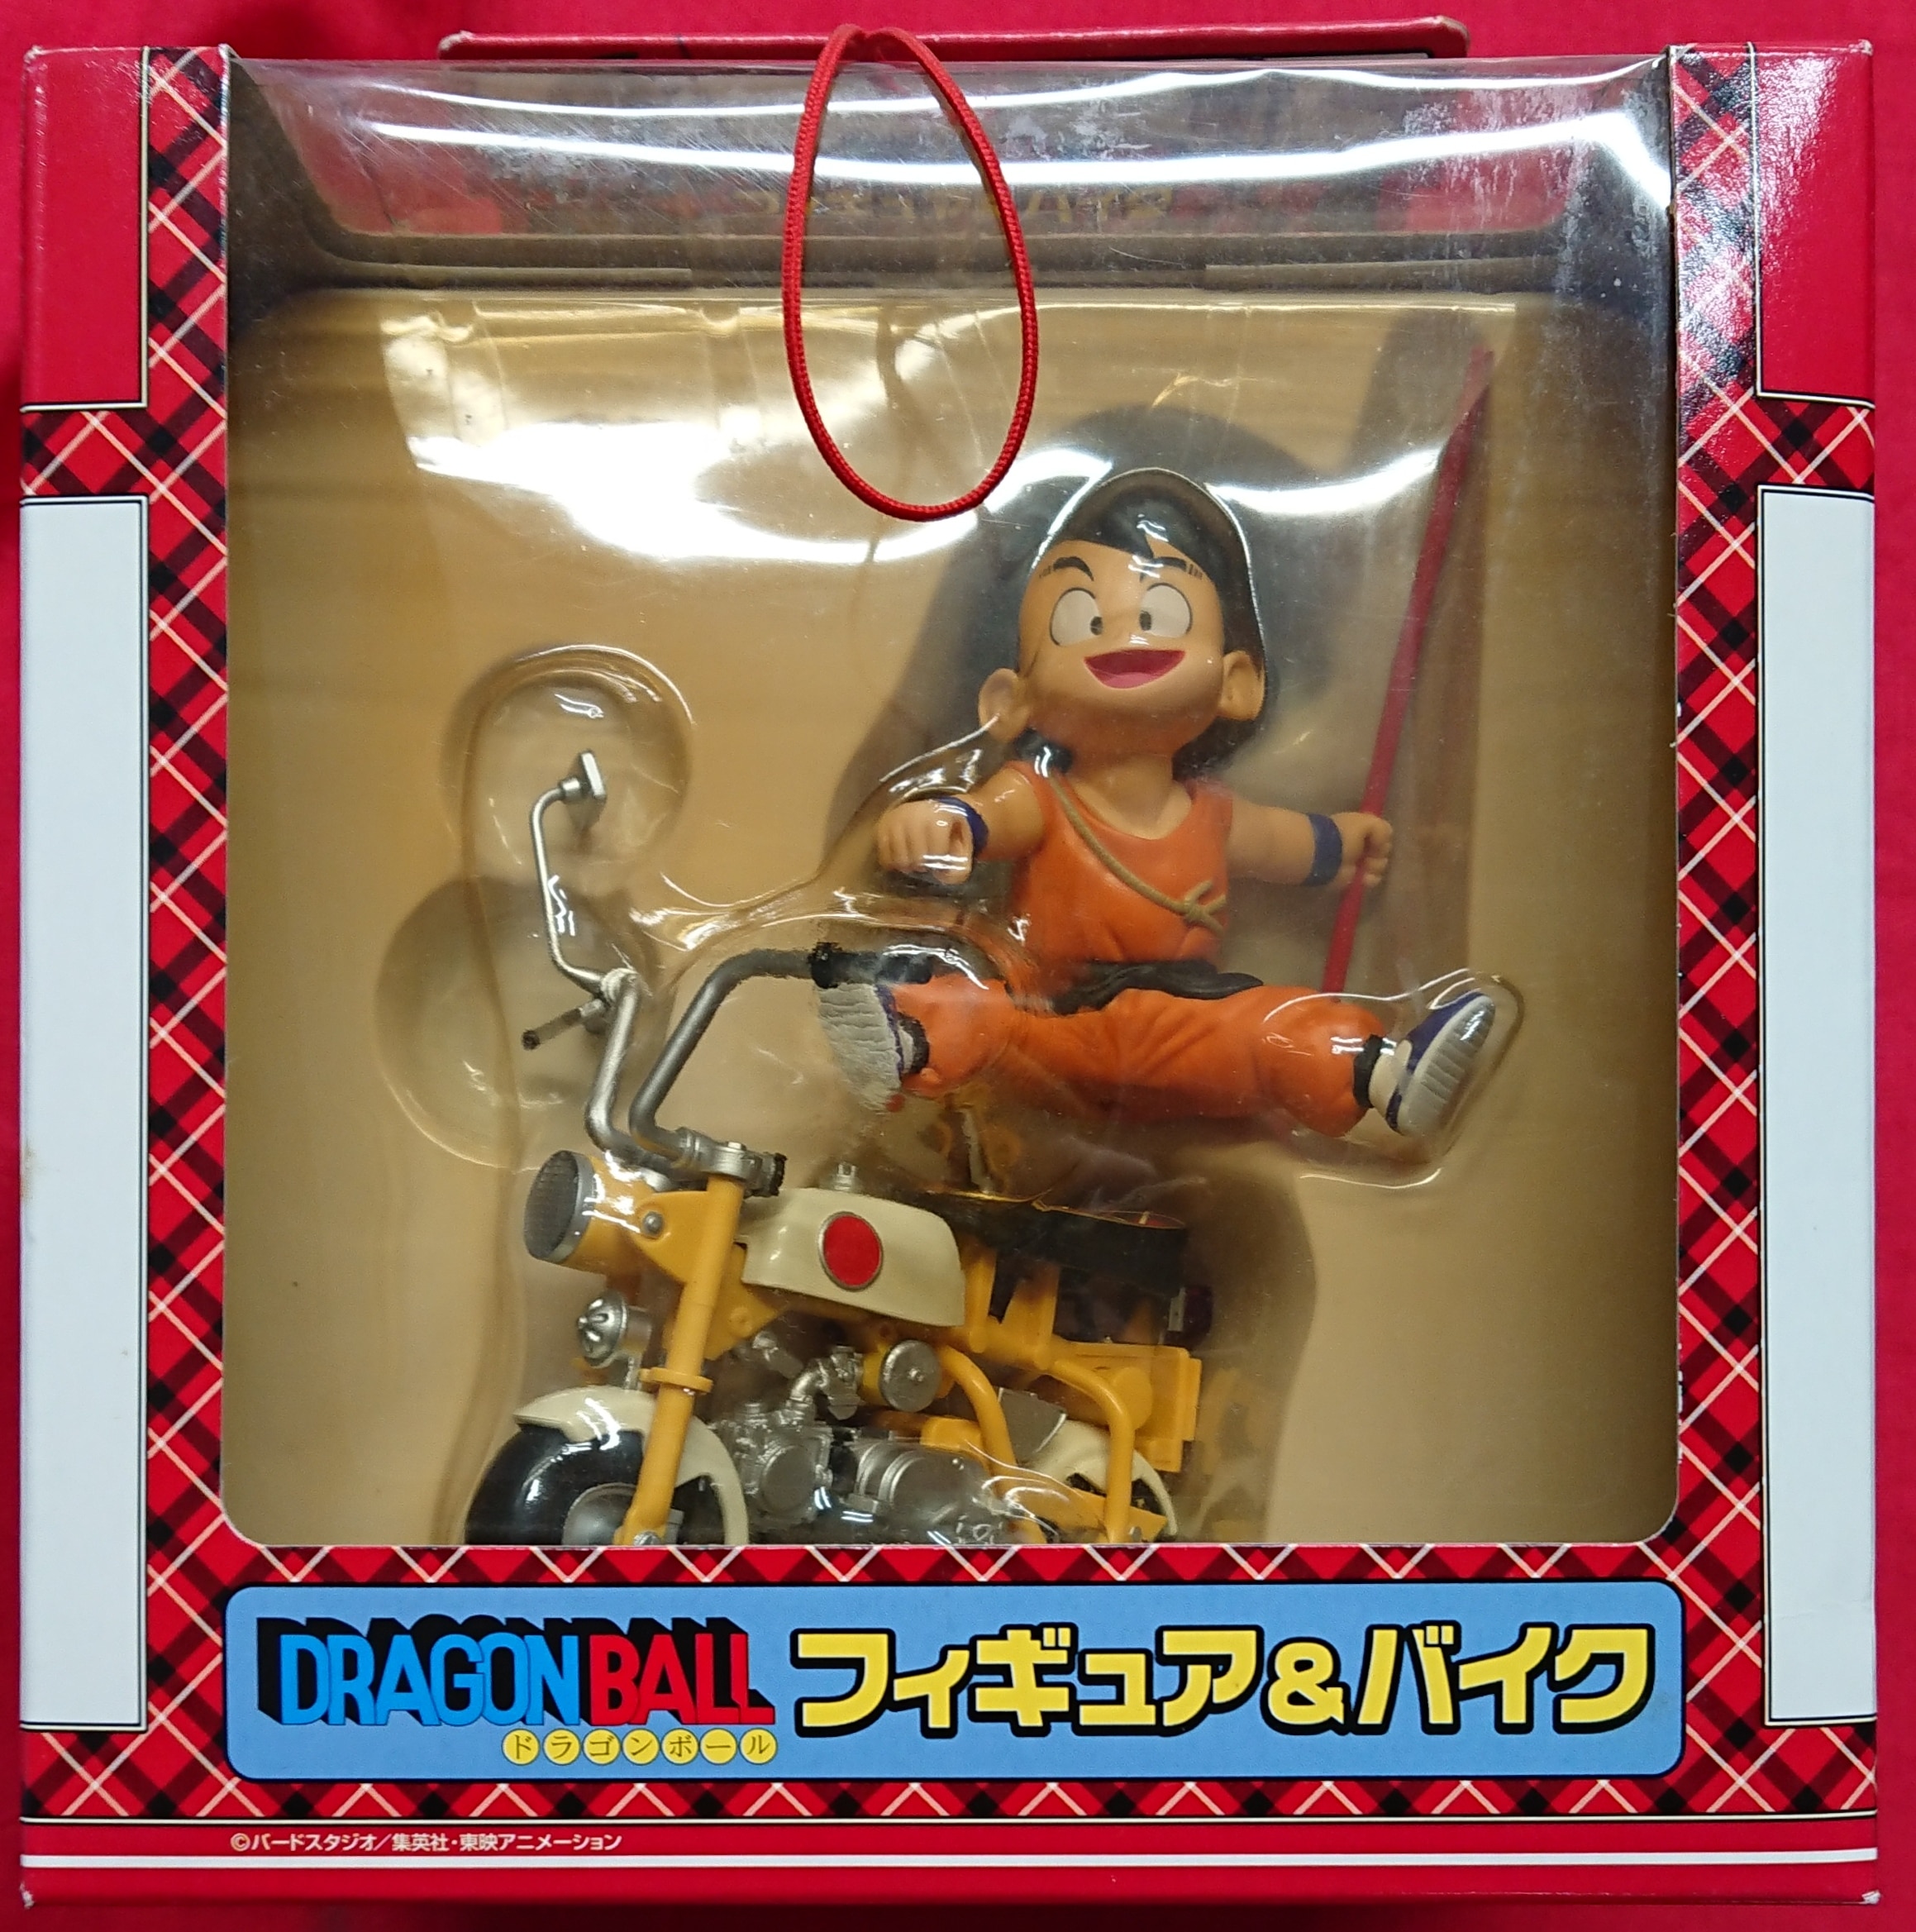 まんだらけ通販 バンプレスト ドラゴンボール フィギュア バイク 孫悟空 Son Gokou Bike 福岡店からの出品